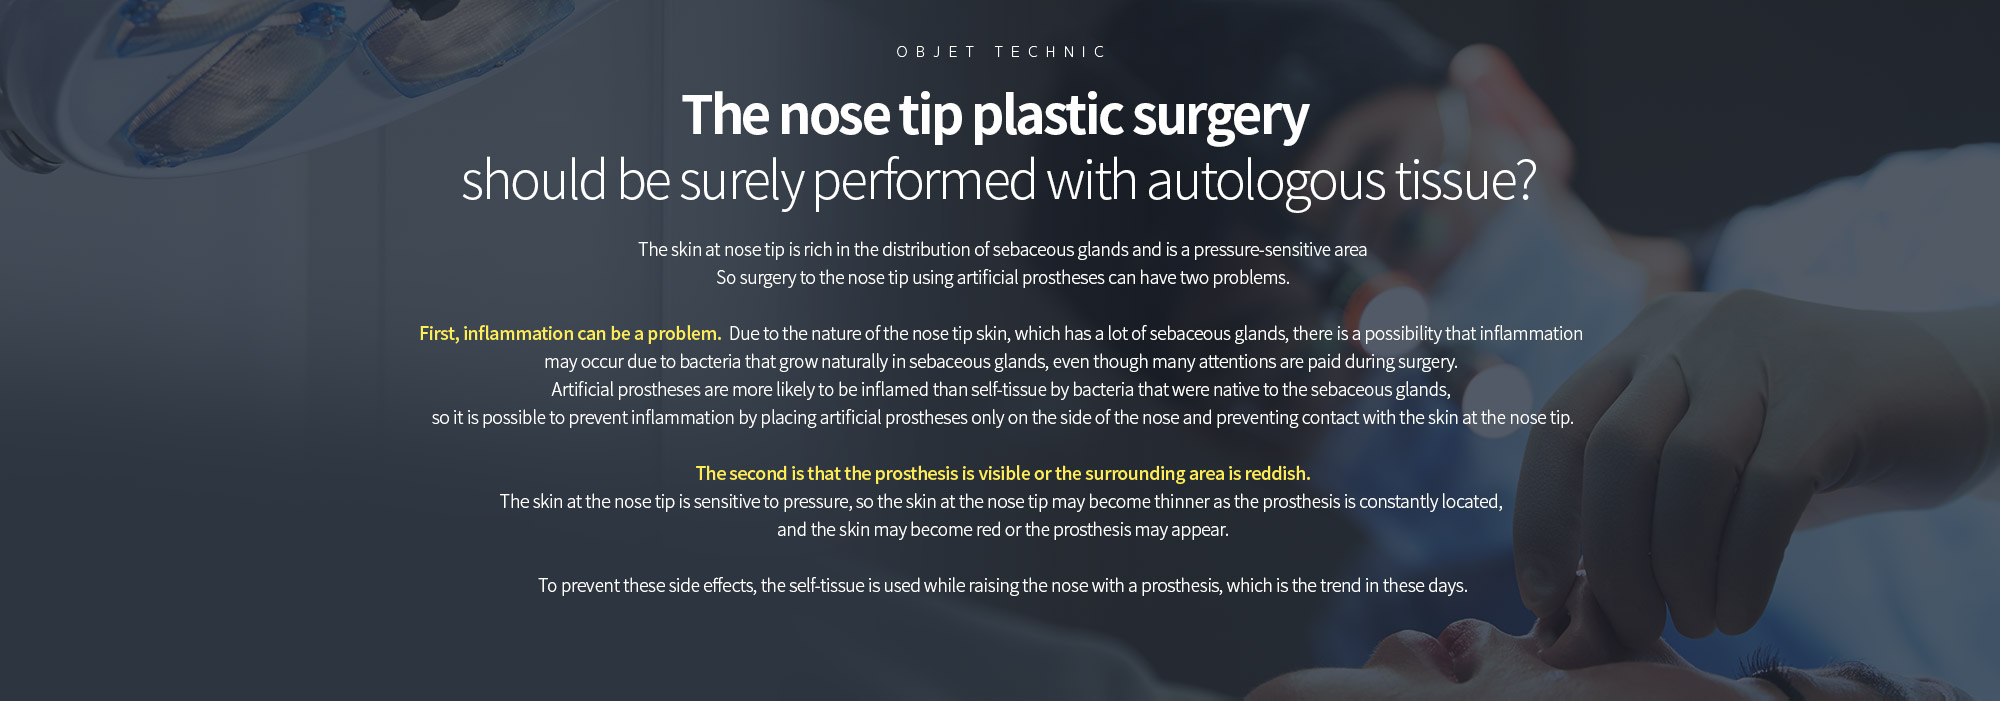 코끝성형, 꼭 자가조직으로 이루어져야 할까? 
	코끝의 피부는 피지선의 분포가 풍부하며 압력에 민감한 부위입니다. 따라서 인공보형물을 이용하여 코끝까지 수술하는 경우는 두 가지 정도의 문제점이 있을 수 있습니다. 

	첫 번째는 염증이 문제가 될 수 있습니다. 피지선이 많이 분포하는 코끝 피부의 특성상 수술 시에 매우 조심함에도 불구하고 피지선 등에 자생하던 세균들에 의해 염증이 생길 가능성이 있습니다. 자가조직보다는 인공보형물은 염증이 생길 가능성이 높으므로 인공보형물은 콧대 쪽에만 위치시켜서 코끝 쪽의 피부와의 접촉을 막아주는 것이 염증을 막아줄 수 있습니다. 

	두 번째는 보형물이 비춰 보이거나 주변 부위로 불그스름한 기운이 생기는 것입니다. 코끝 피부는 압력에 민감해서 보형물이 지속적으로 위치하면서 코끝의 피부가 얇아지는 경우가 많고 피부가 붉으스름 해지거나 보형물이 비춰보 이는 경우가 발생할 수 있습니다. 

	이러한 부작용을 방지해주기 위해서 콧대는 보형물로 높이면서 코끝은 자가조직을 이용하는 것이 요즘 성형 트렌드라고 할 수 있습니다.
	